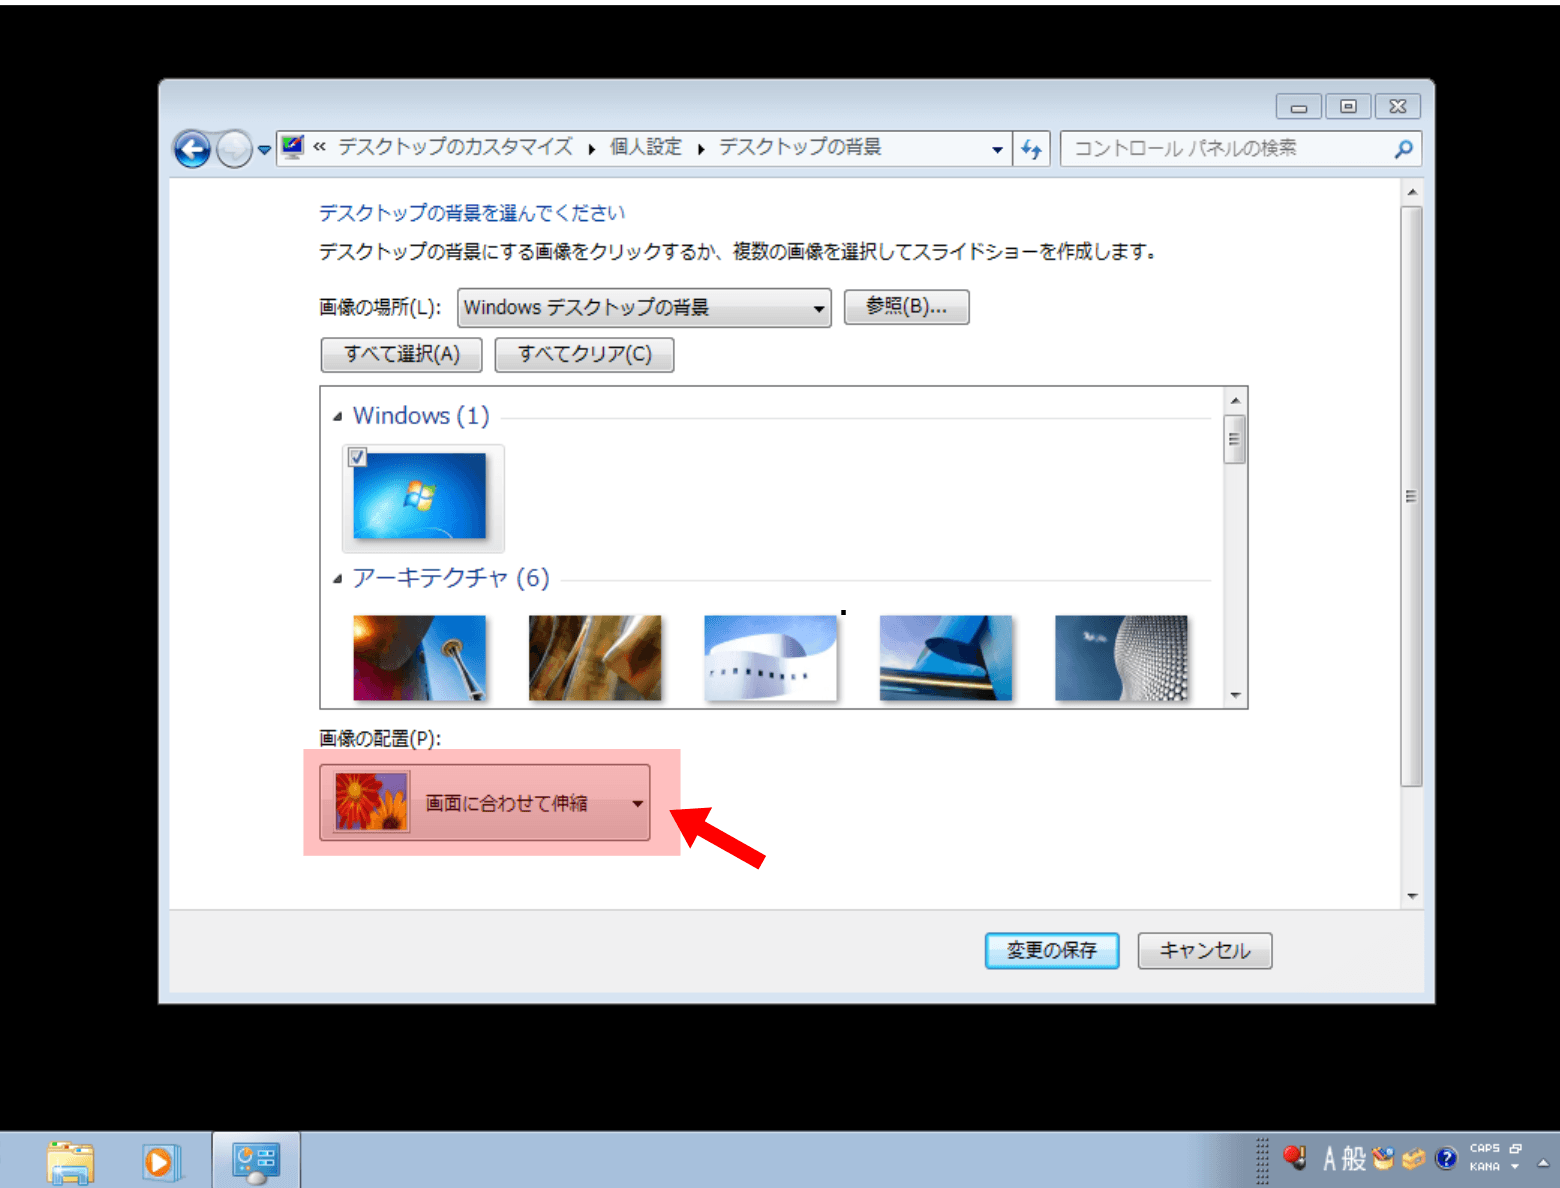 Windows7で壁紙真っ黒になるのを修正するkb4539601が公開されています